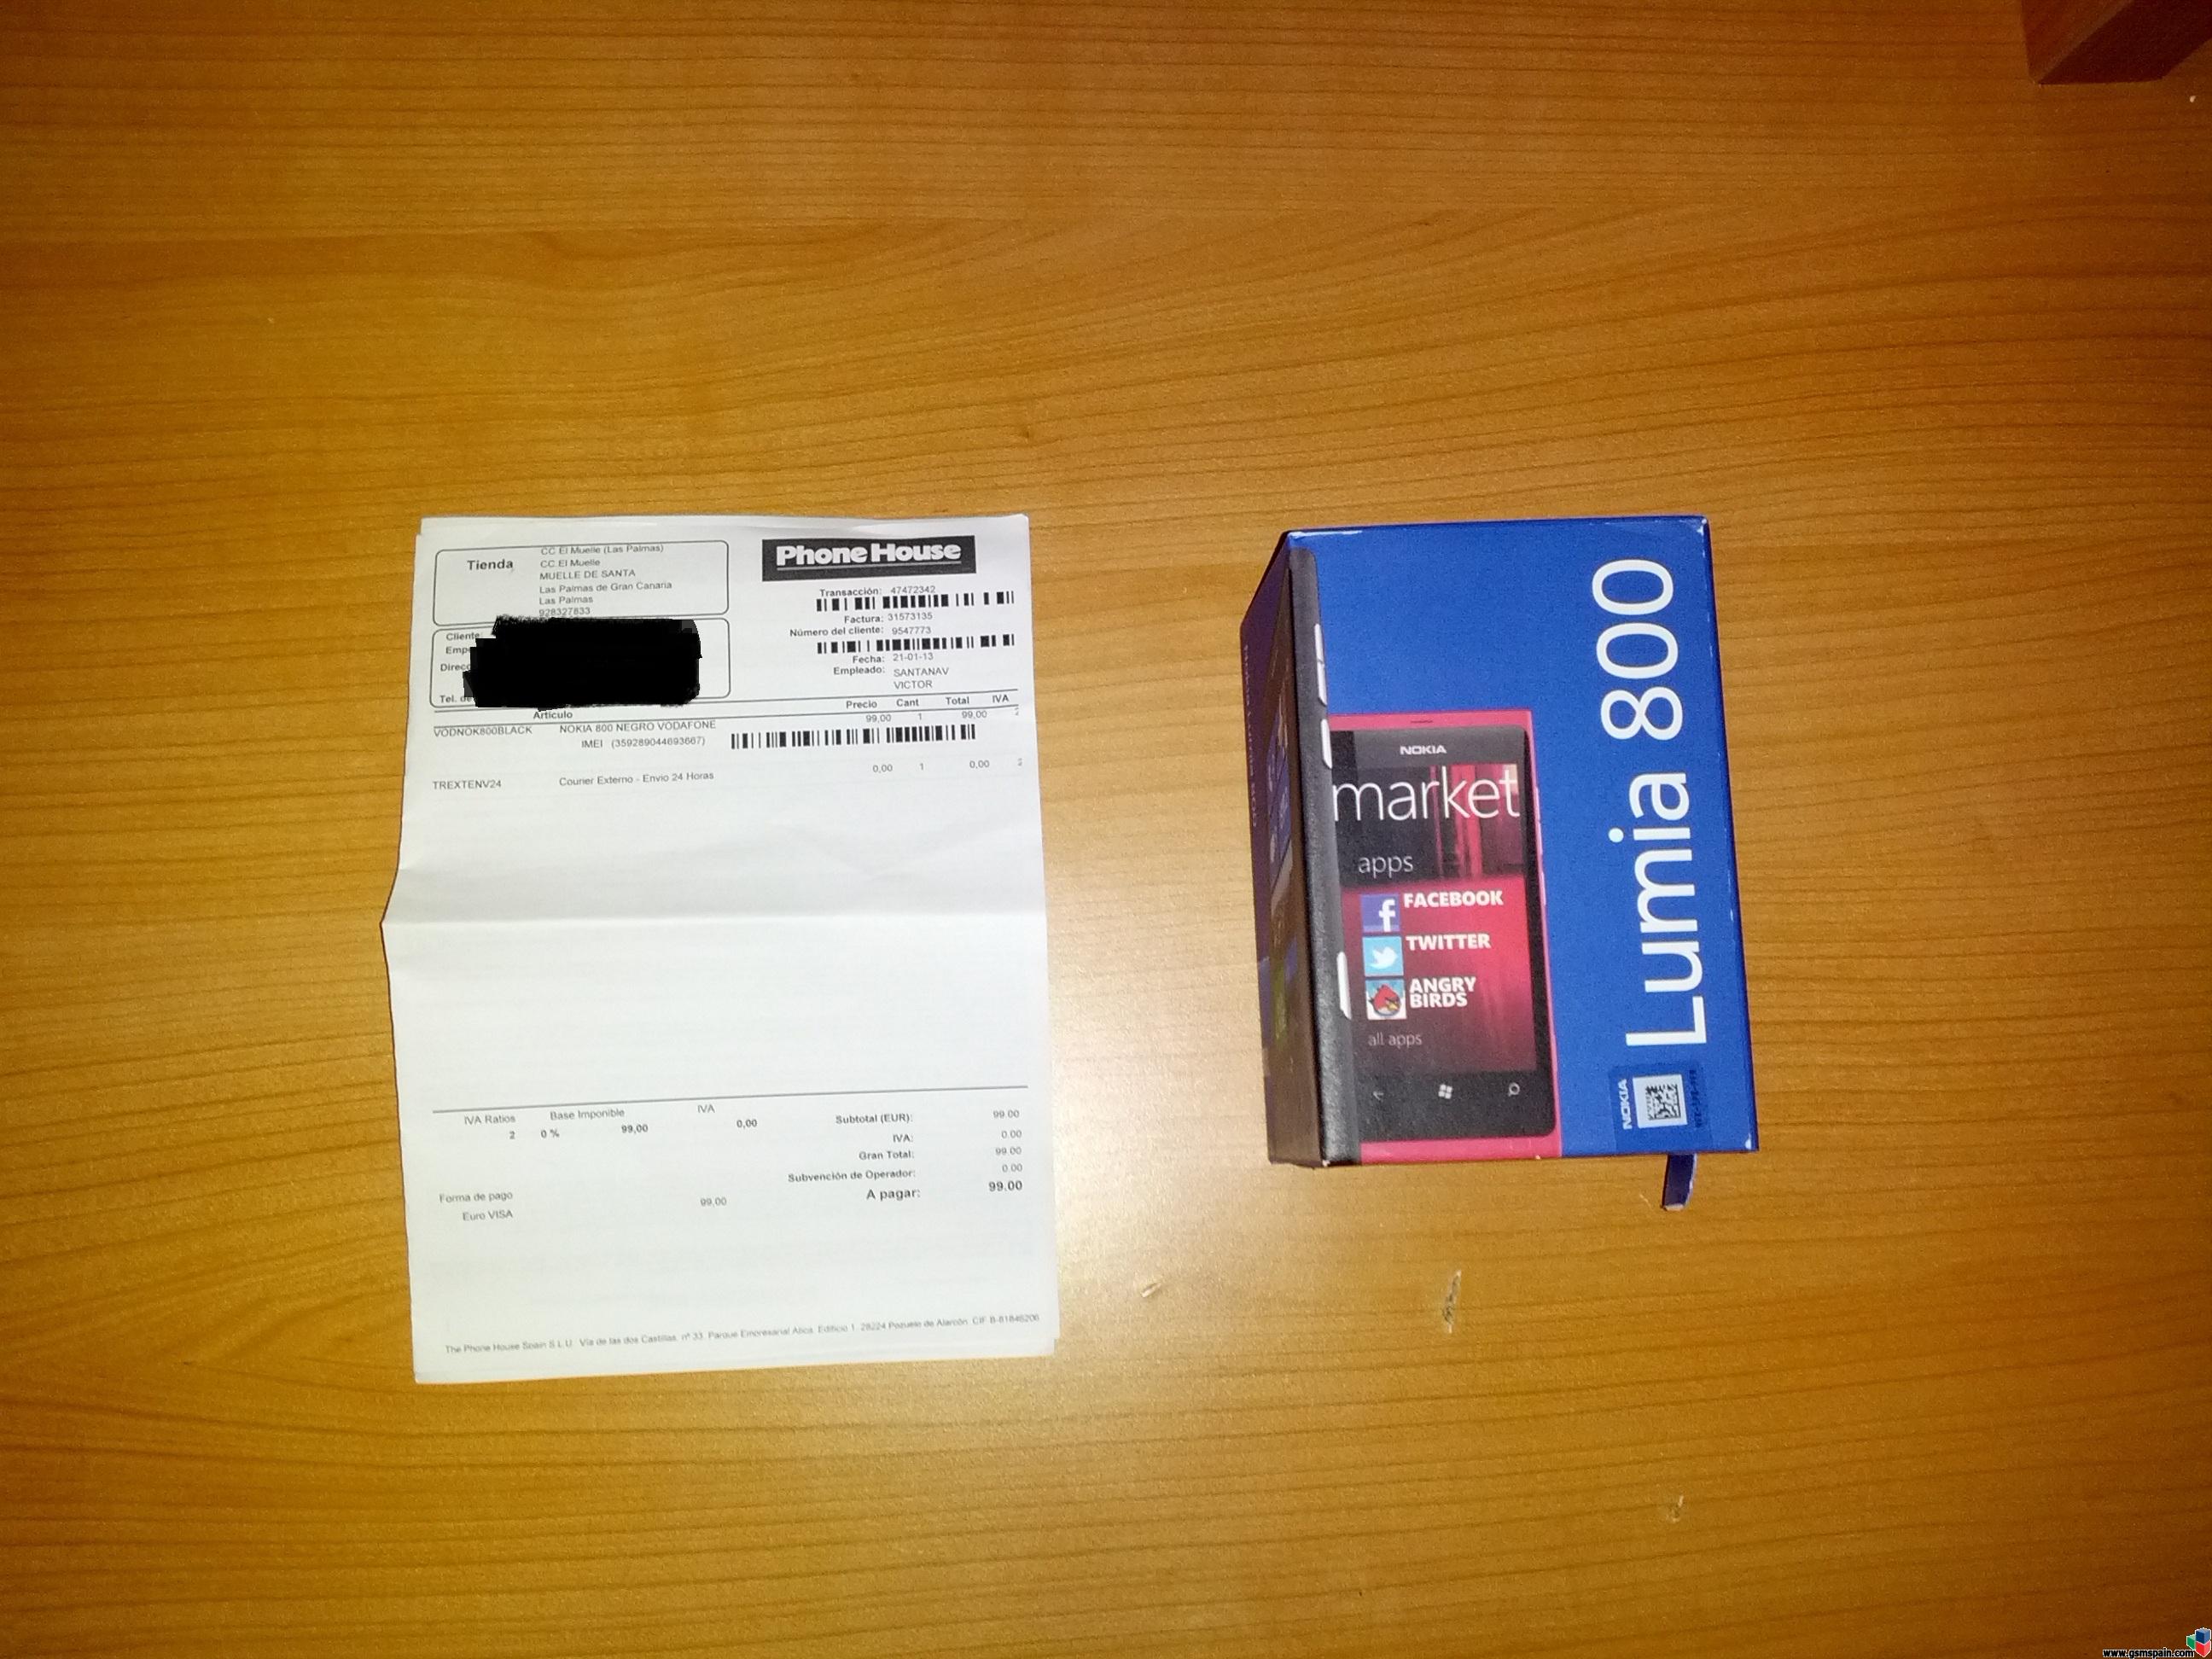 [VENDO] Nokia Lumia 800 precintado